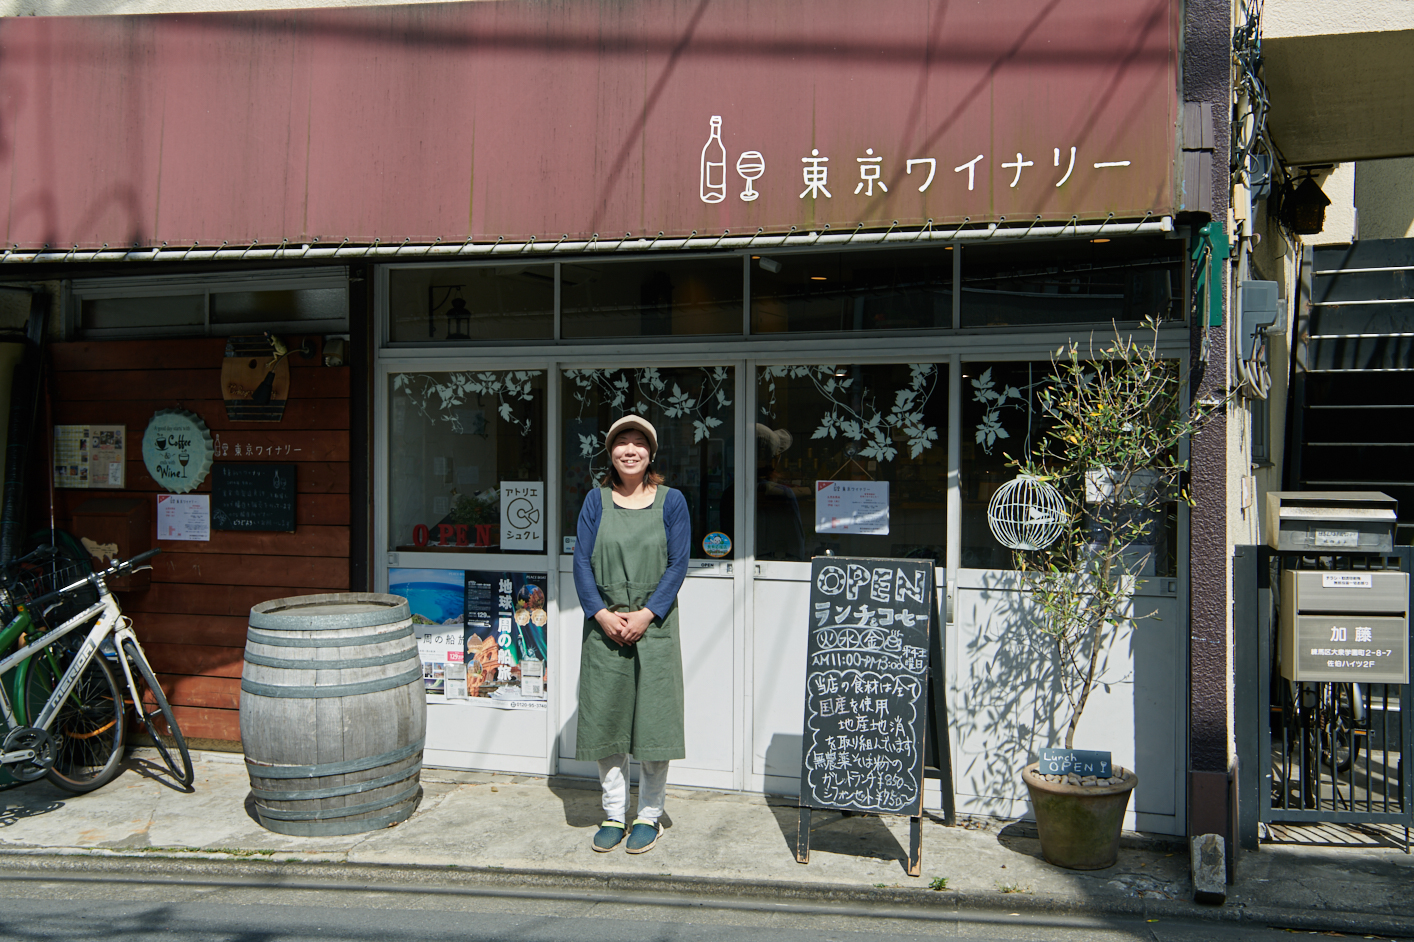 【Hanako w/ Seibu】「ワインを通して東京産の野菜のおいしさを広げたい」。〈東京ワイナリー〉オーナーの人生を変えた、大泉学園の魅力とは。